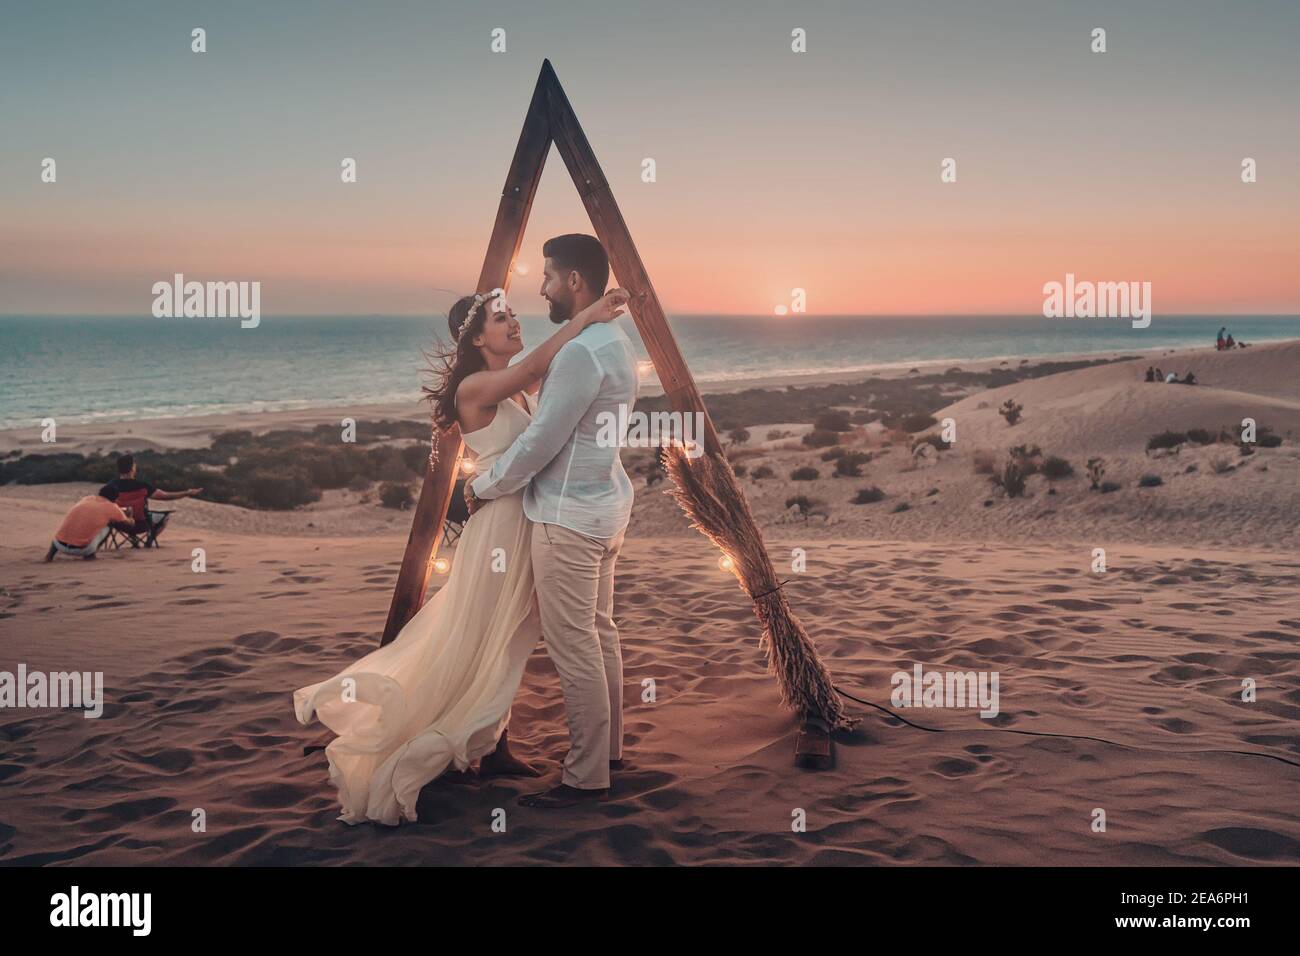 10 septembre 2020, Patara, Turquie : la mariée et le marié posent dans le désert au coucher du soleil sur la mer. Arc décoratif avec éclairage comme attribut pour une photo sho Banque D'Images